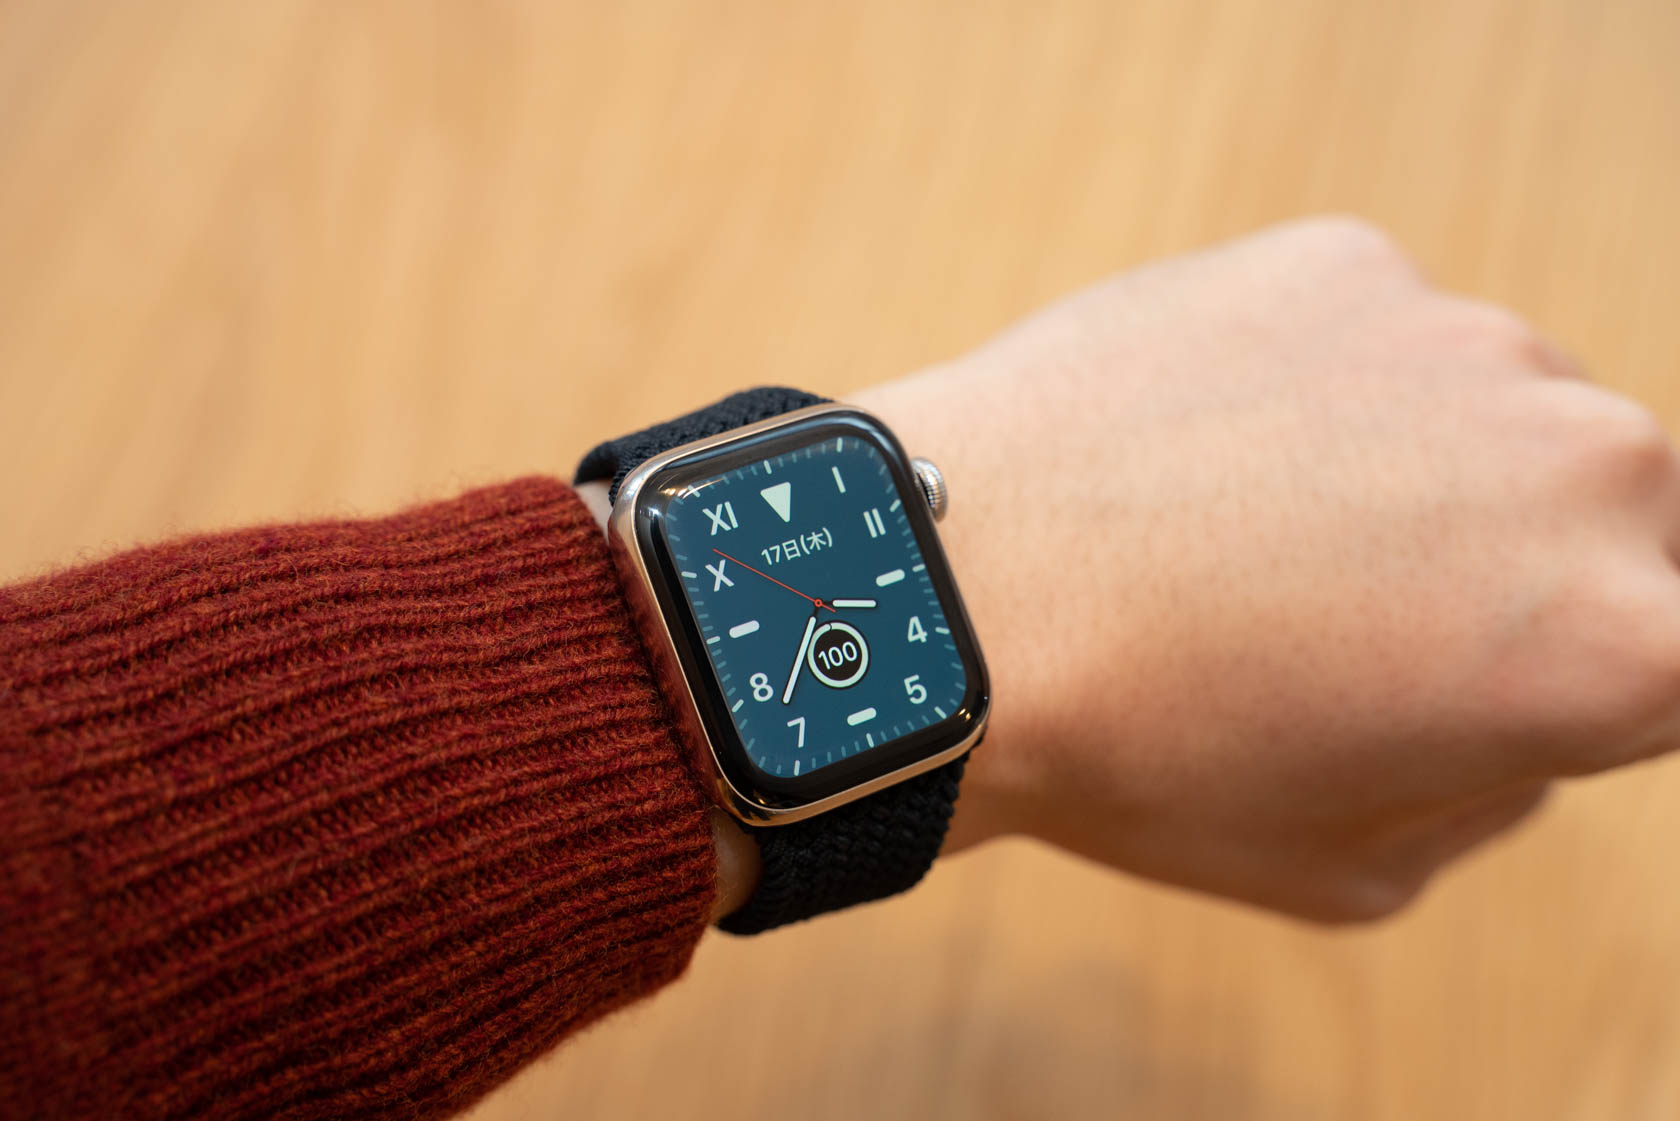 Apple Watch用純正『ブレイデッドソロループ』を1ヶ月使ってみた。値は 